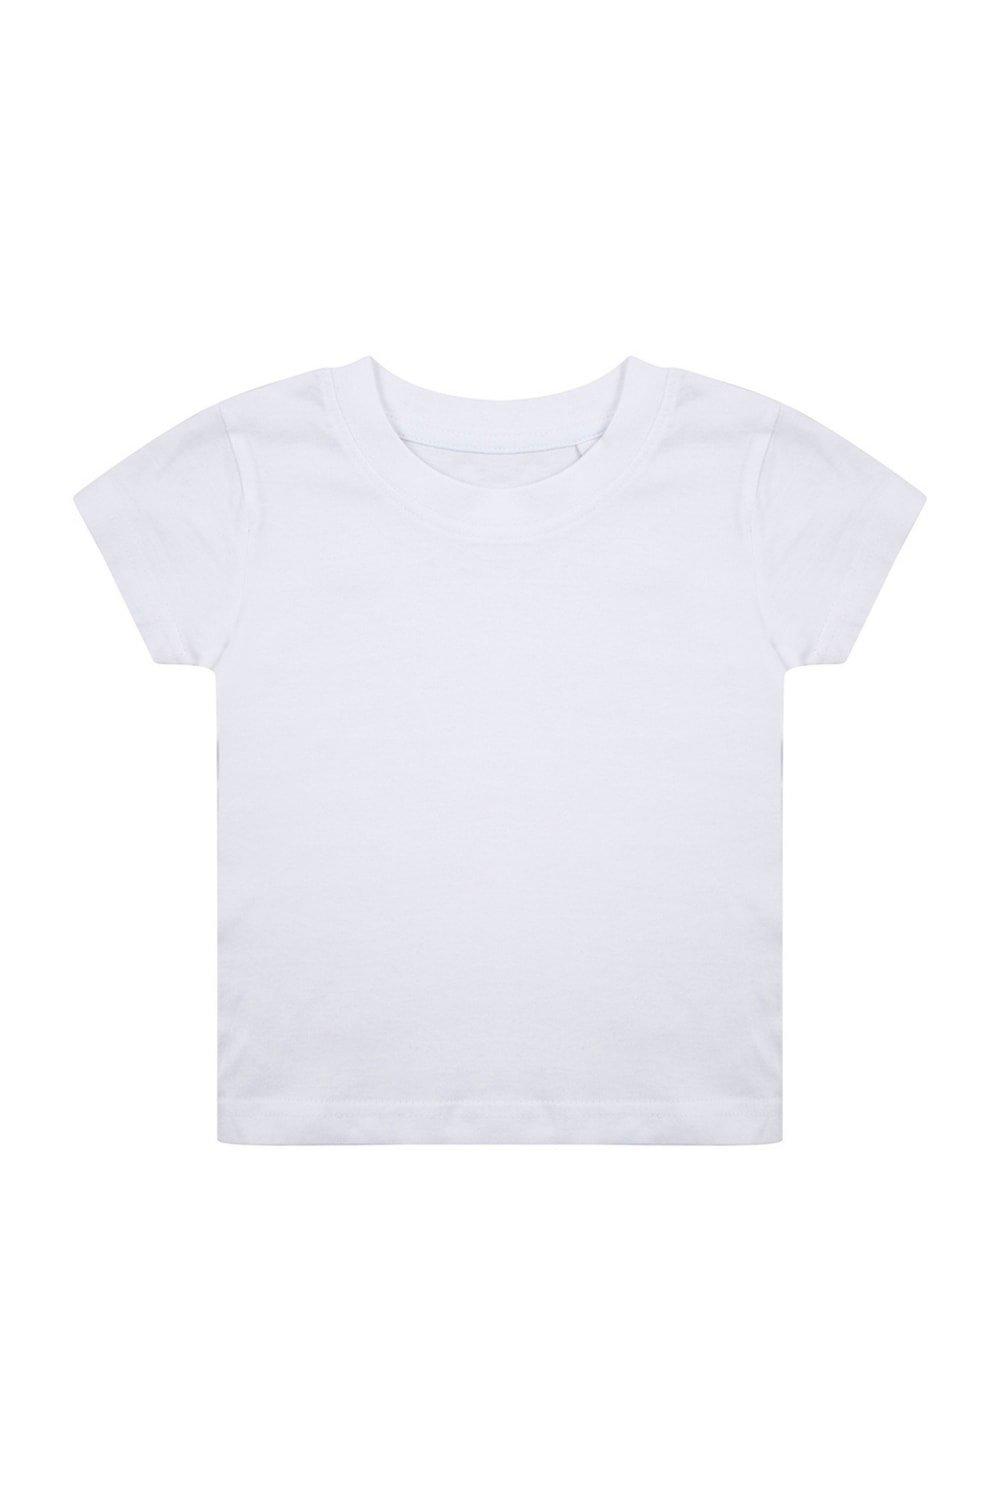 Органическая футболка Larkwood, белый костюм размер 12 18 мес